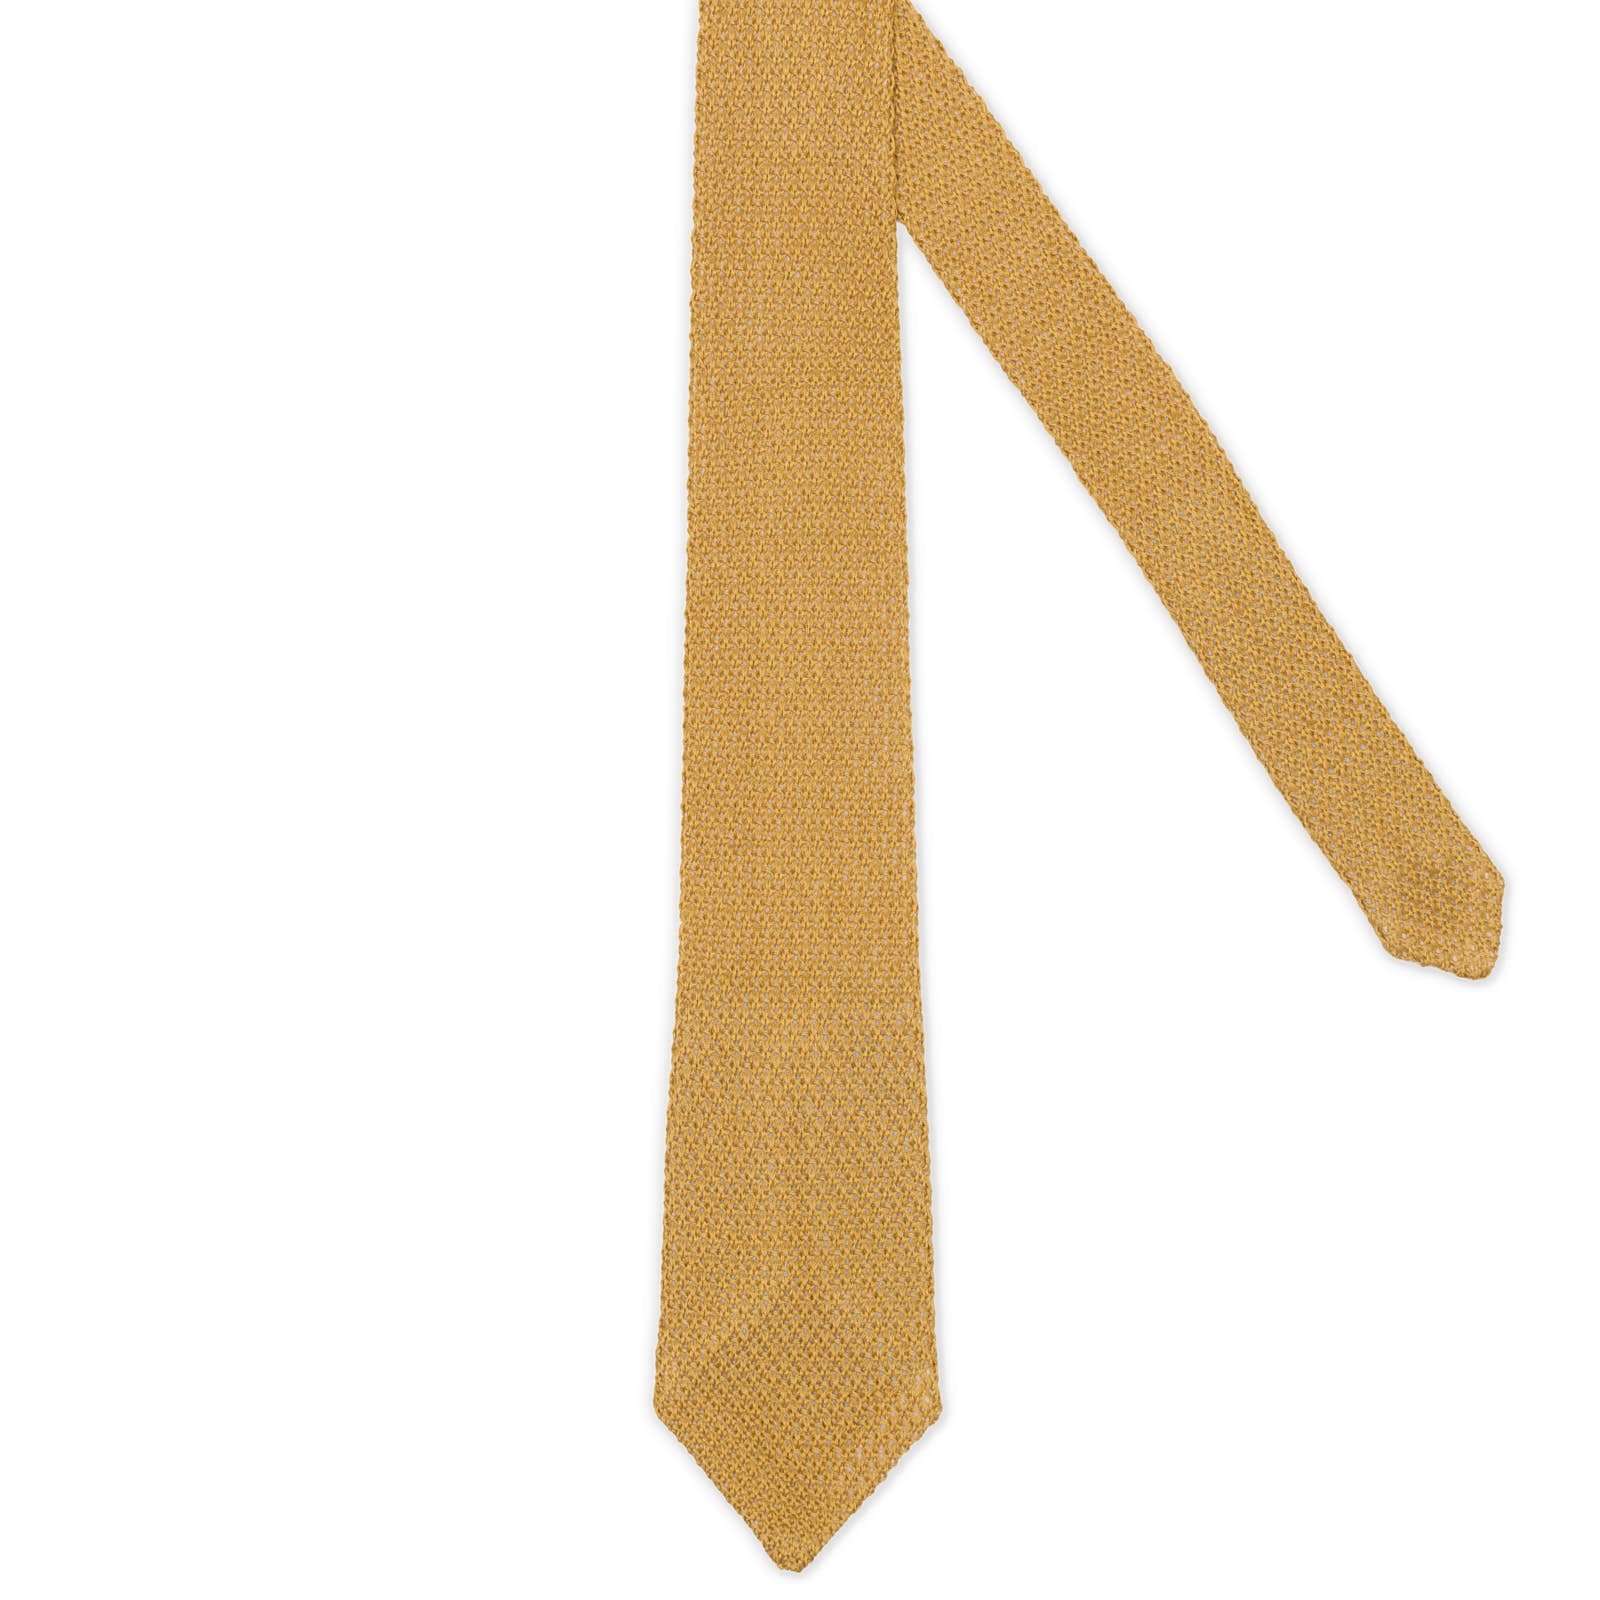 VANNUCCI MILANO Gold Cotton Knit Tie NEW